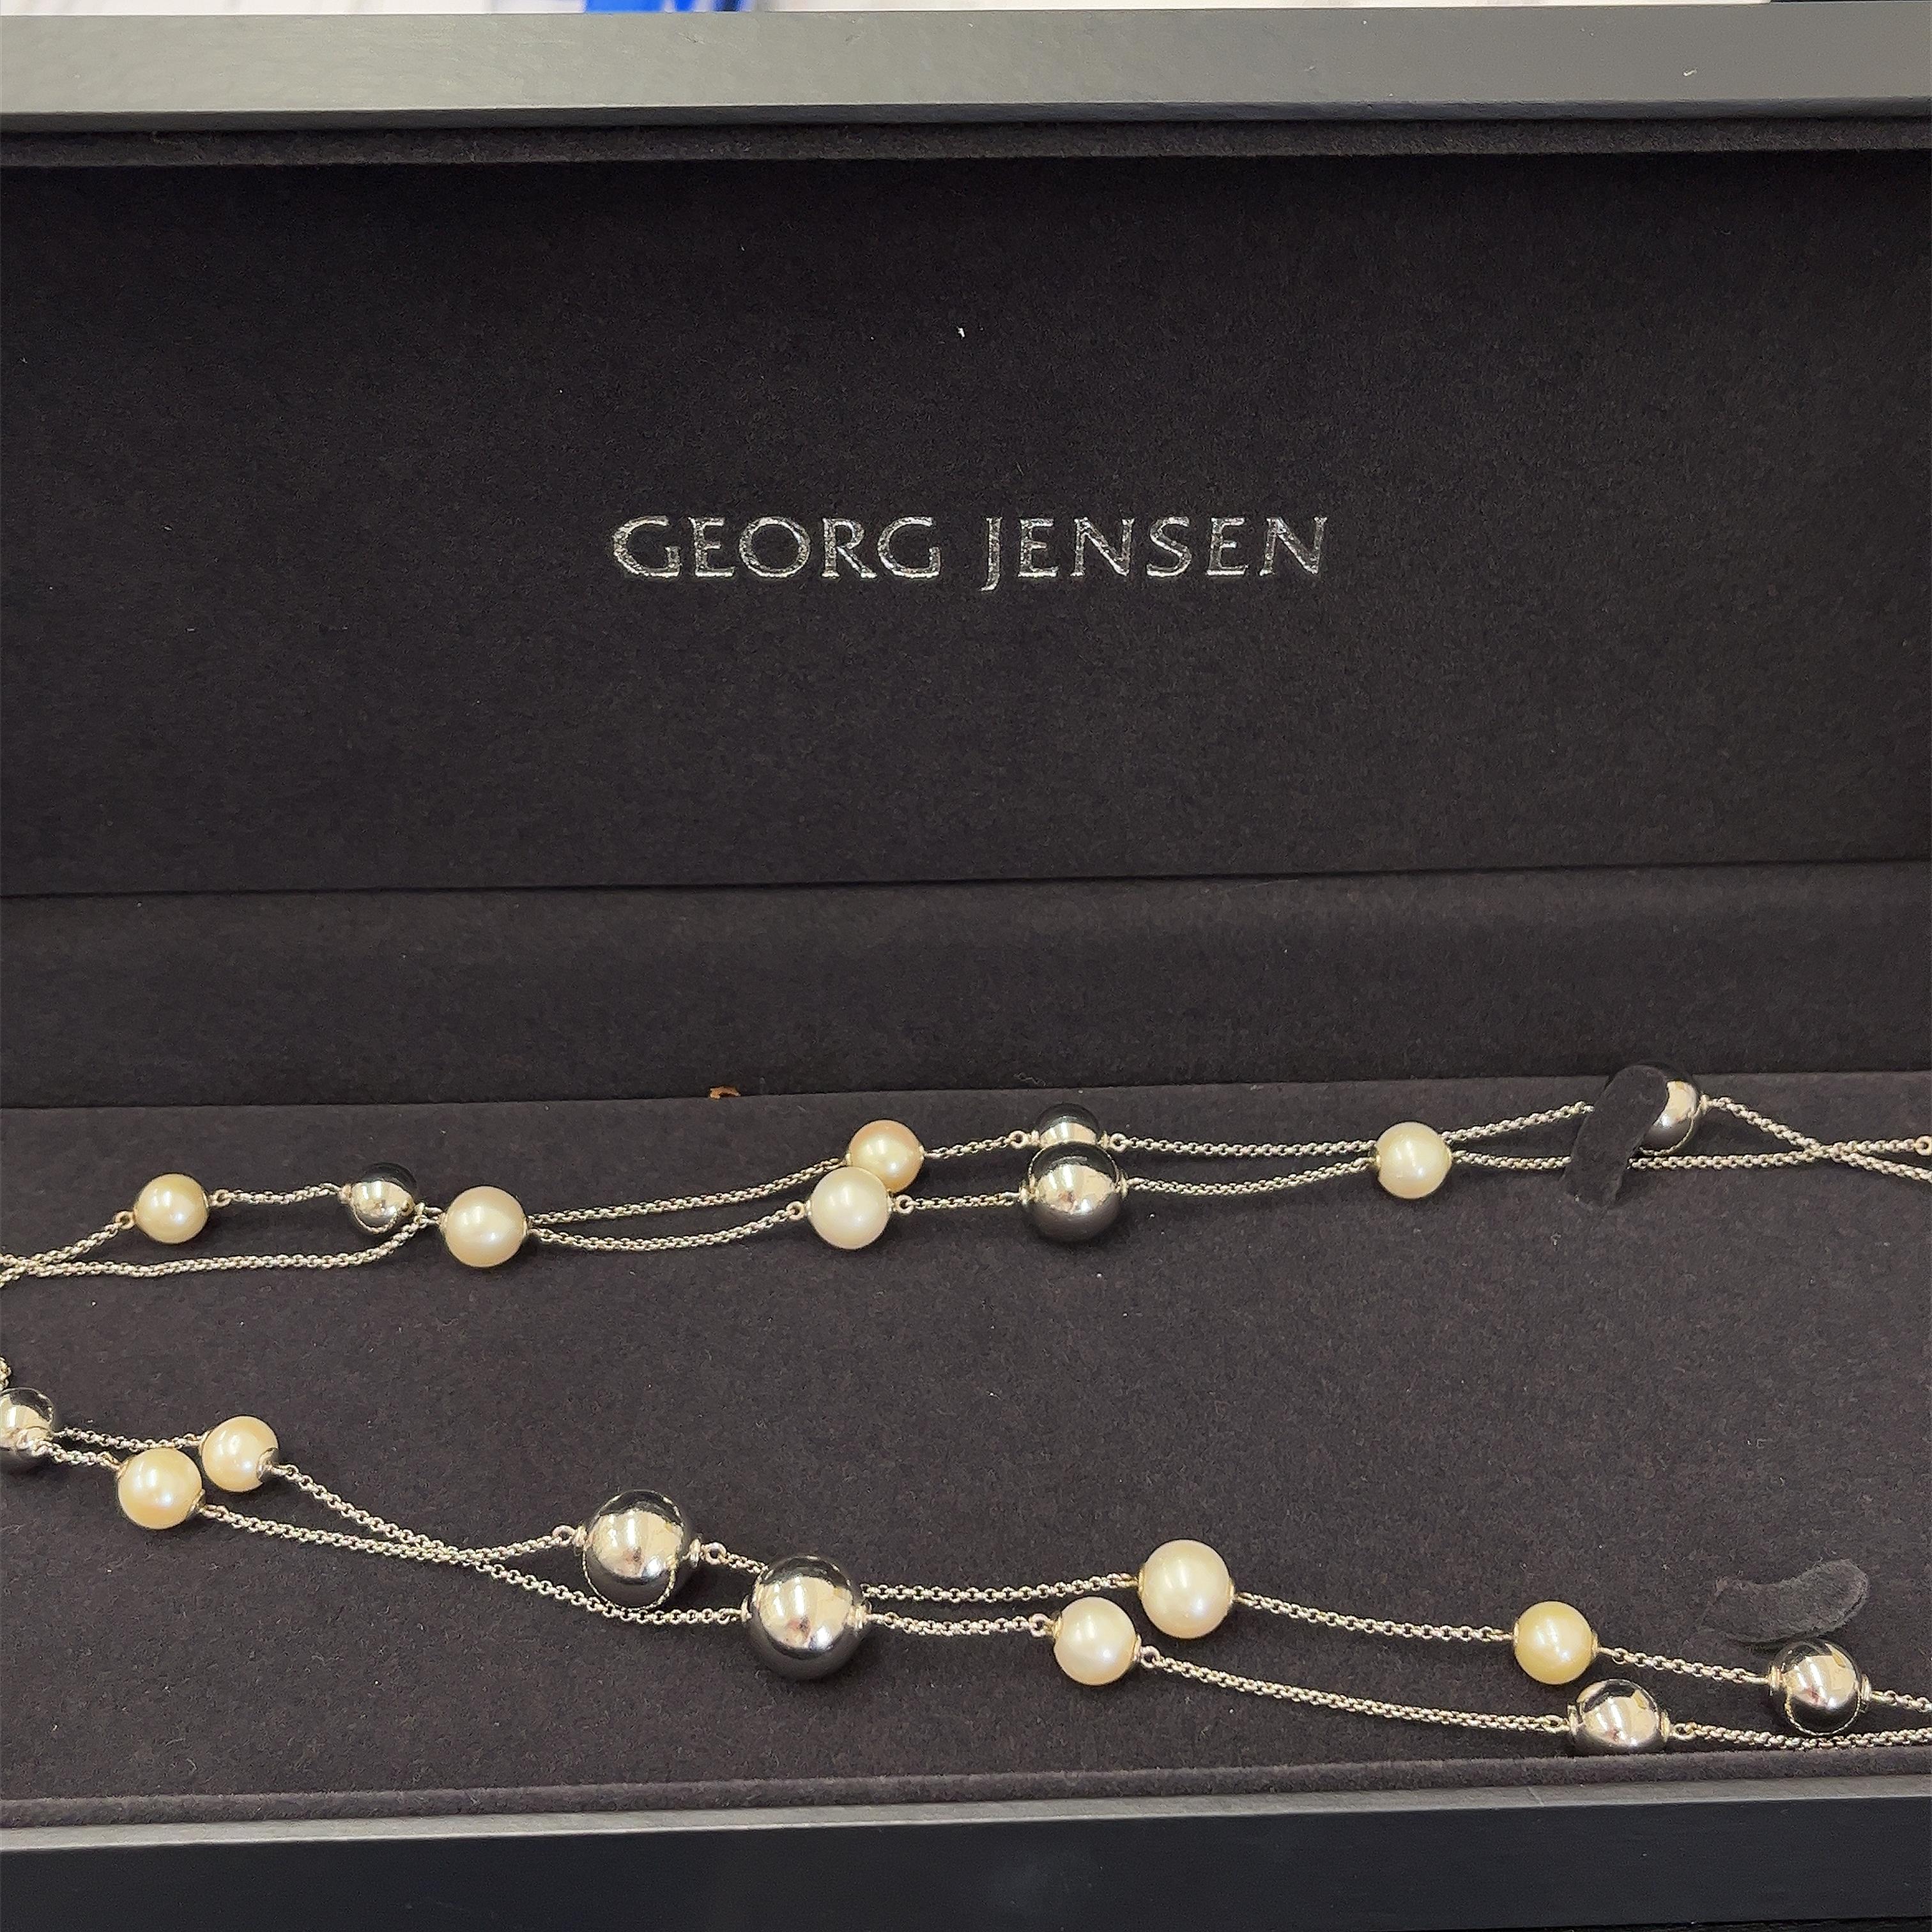 Wunderschönes, klassisches Design 
Georg Jensen Halskette.
Die Halskette ist meisterhaft gefertigt aus 
Sterlingsilber und eleganten weißen Perlen.
Tragen Sie dazu die passenden Ohrringe aus der gleichen Collection'S 
für einen raffinierten